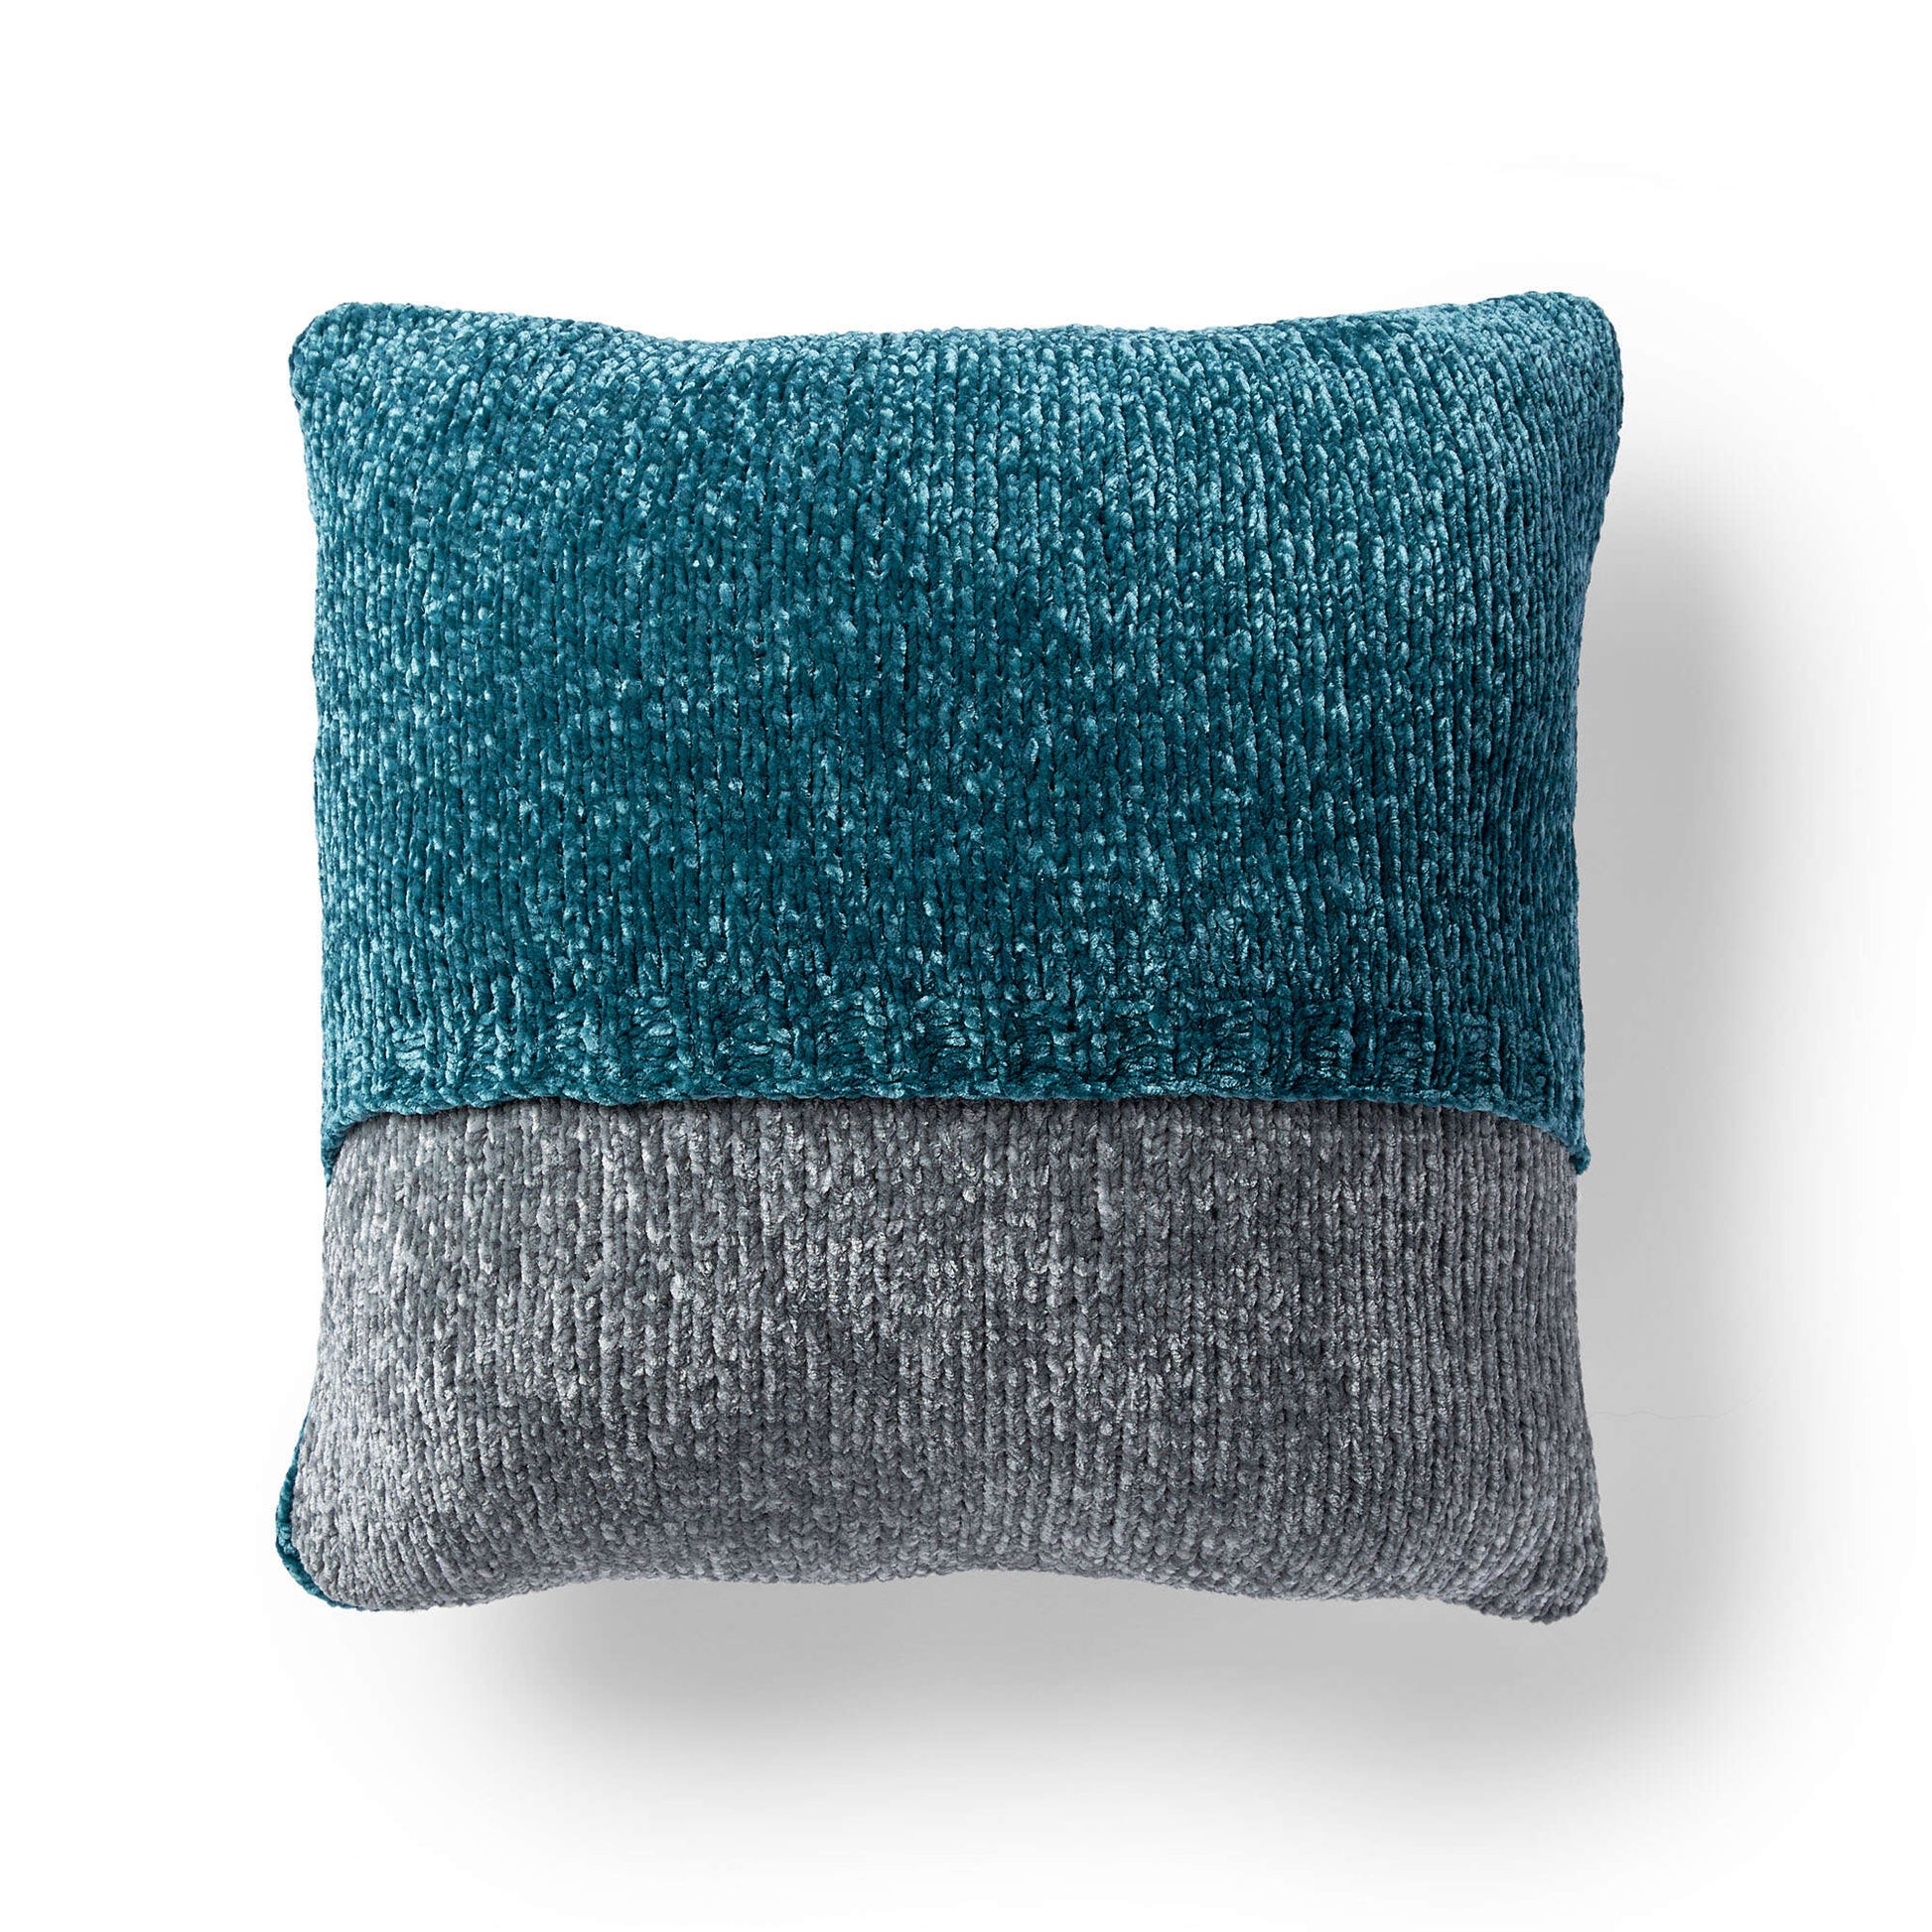 Free Bernat Any Angle Pillow Knit Pattern